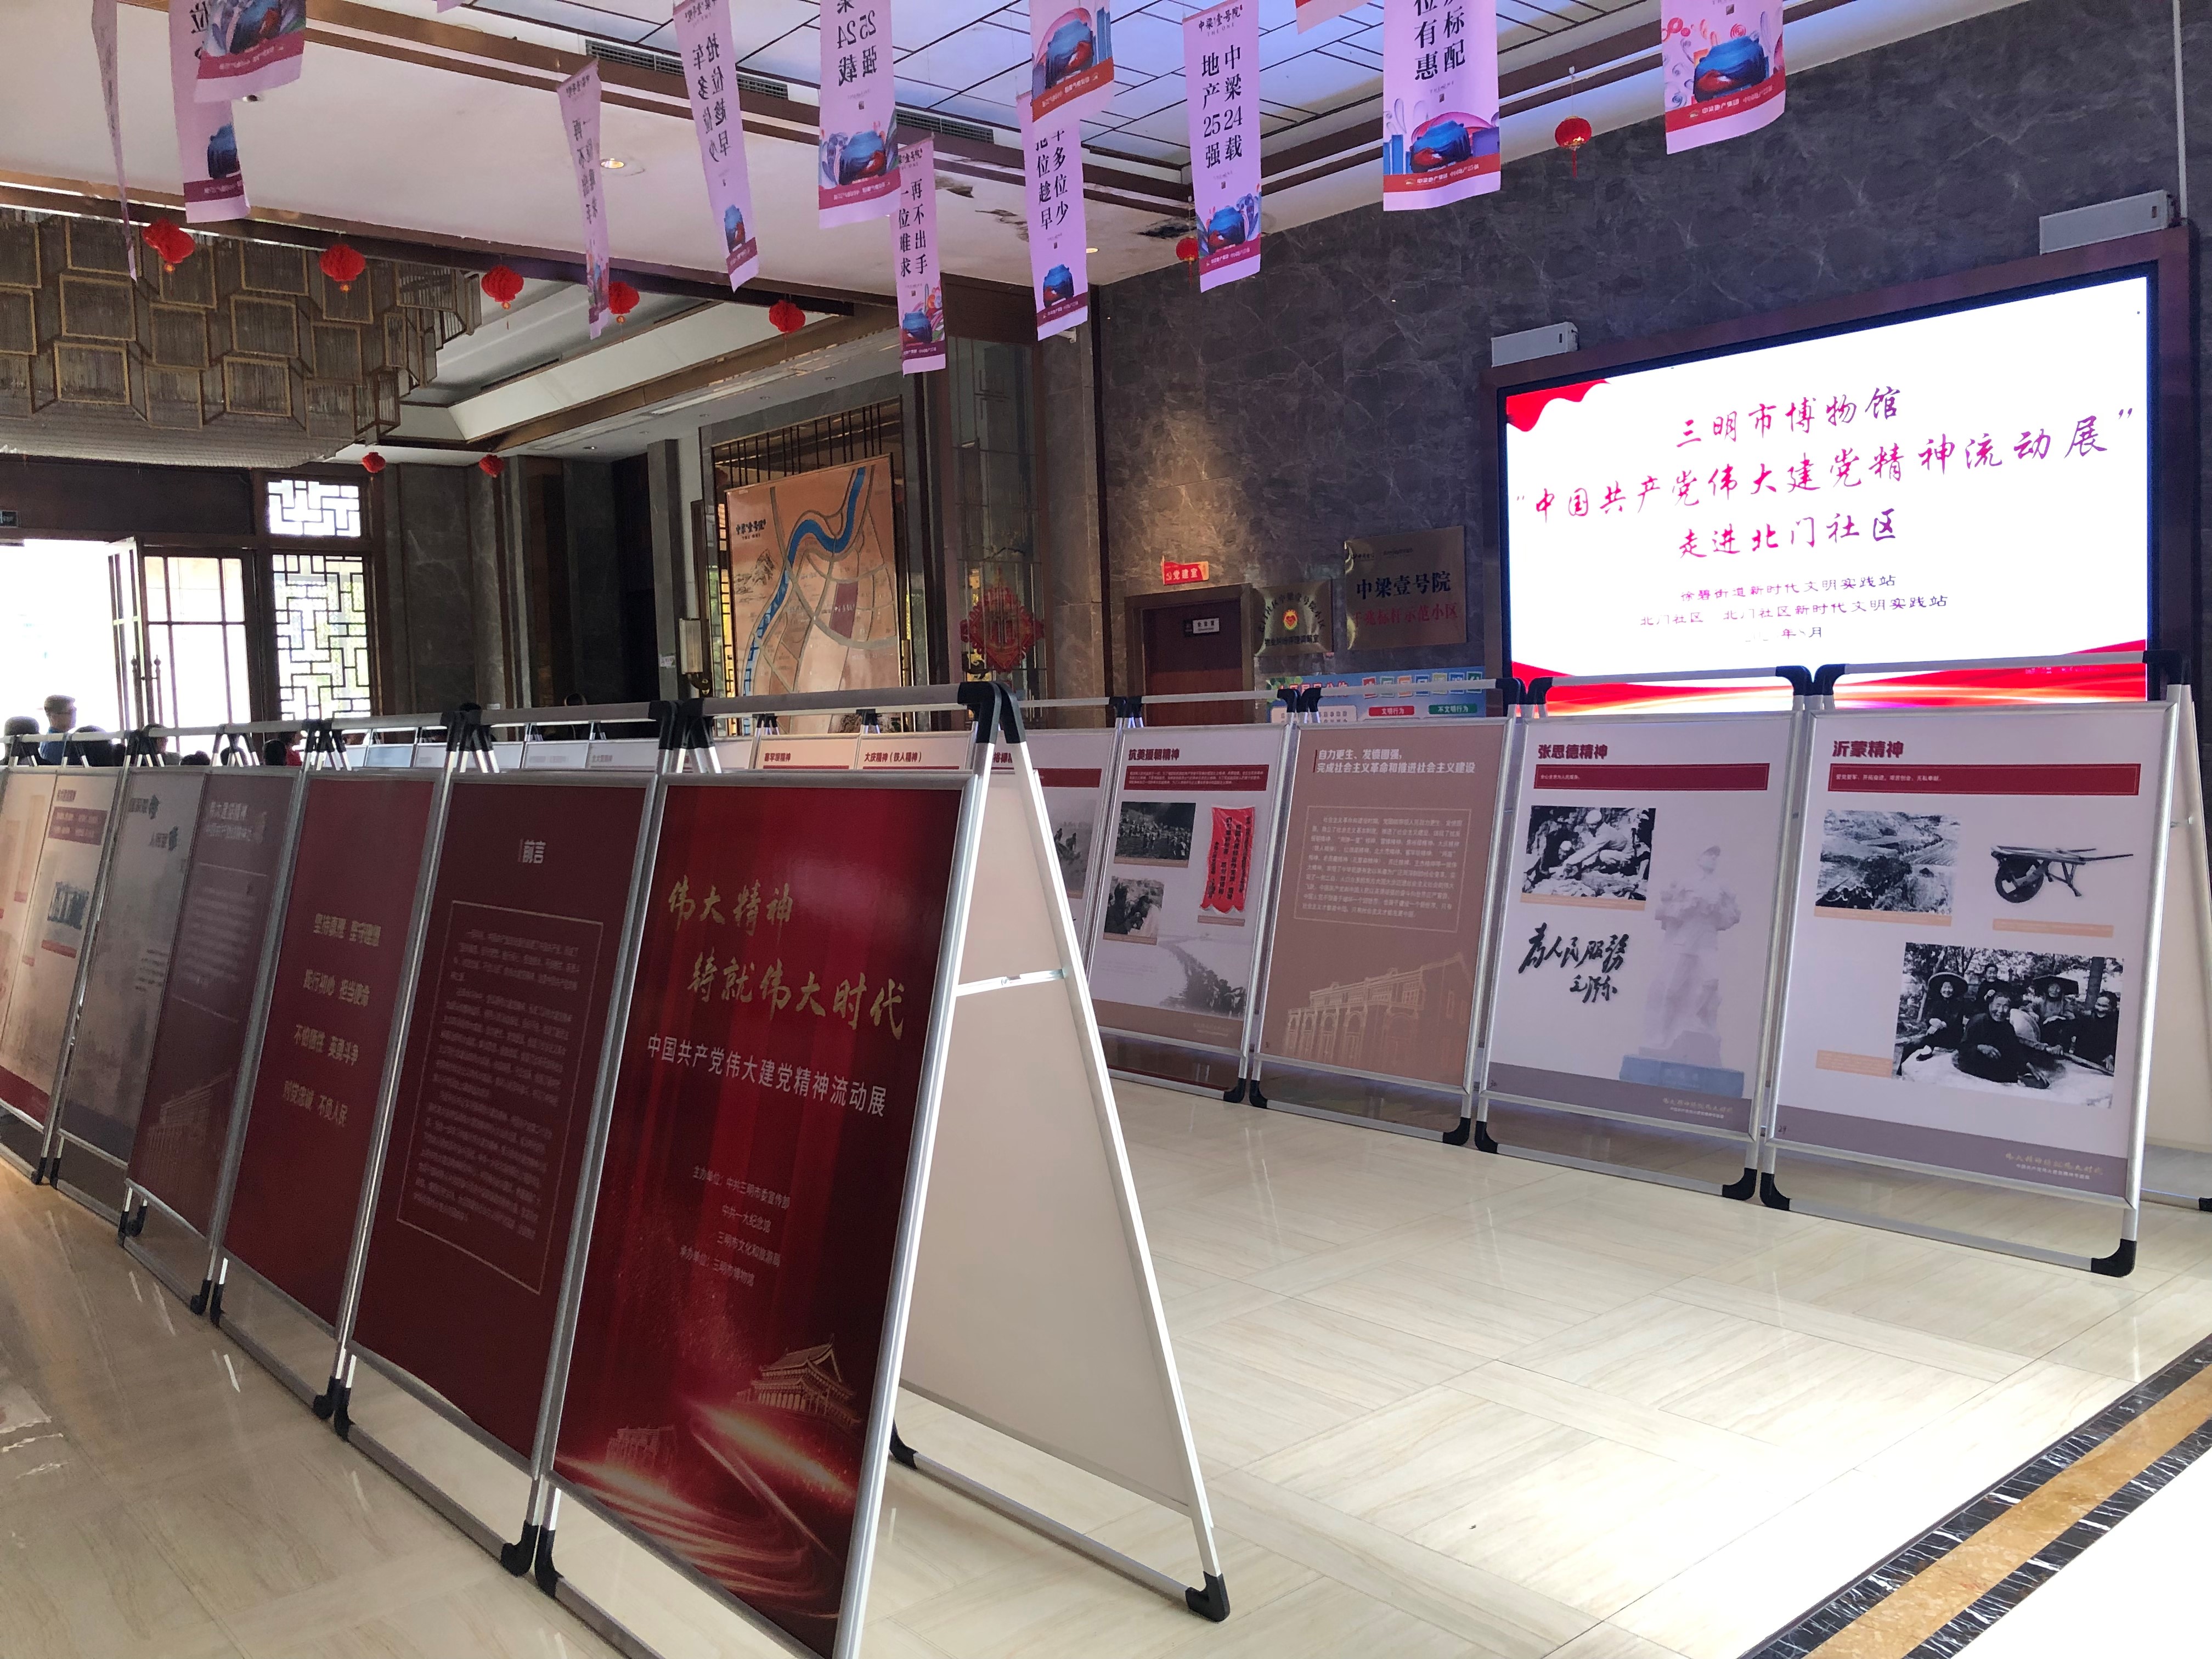 三明市博物馆“中国共产党伟大建党精神流动展”走进三元区北门社区